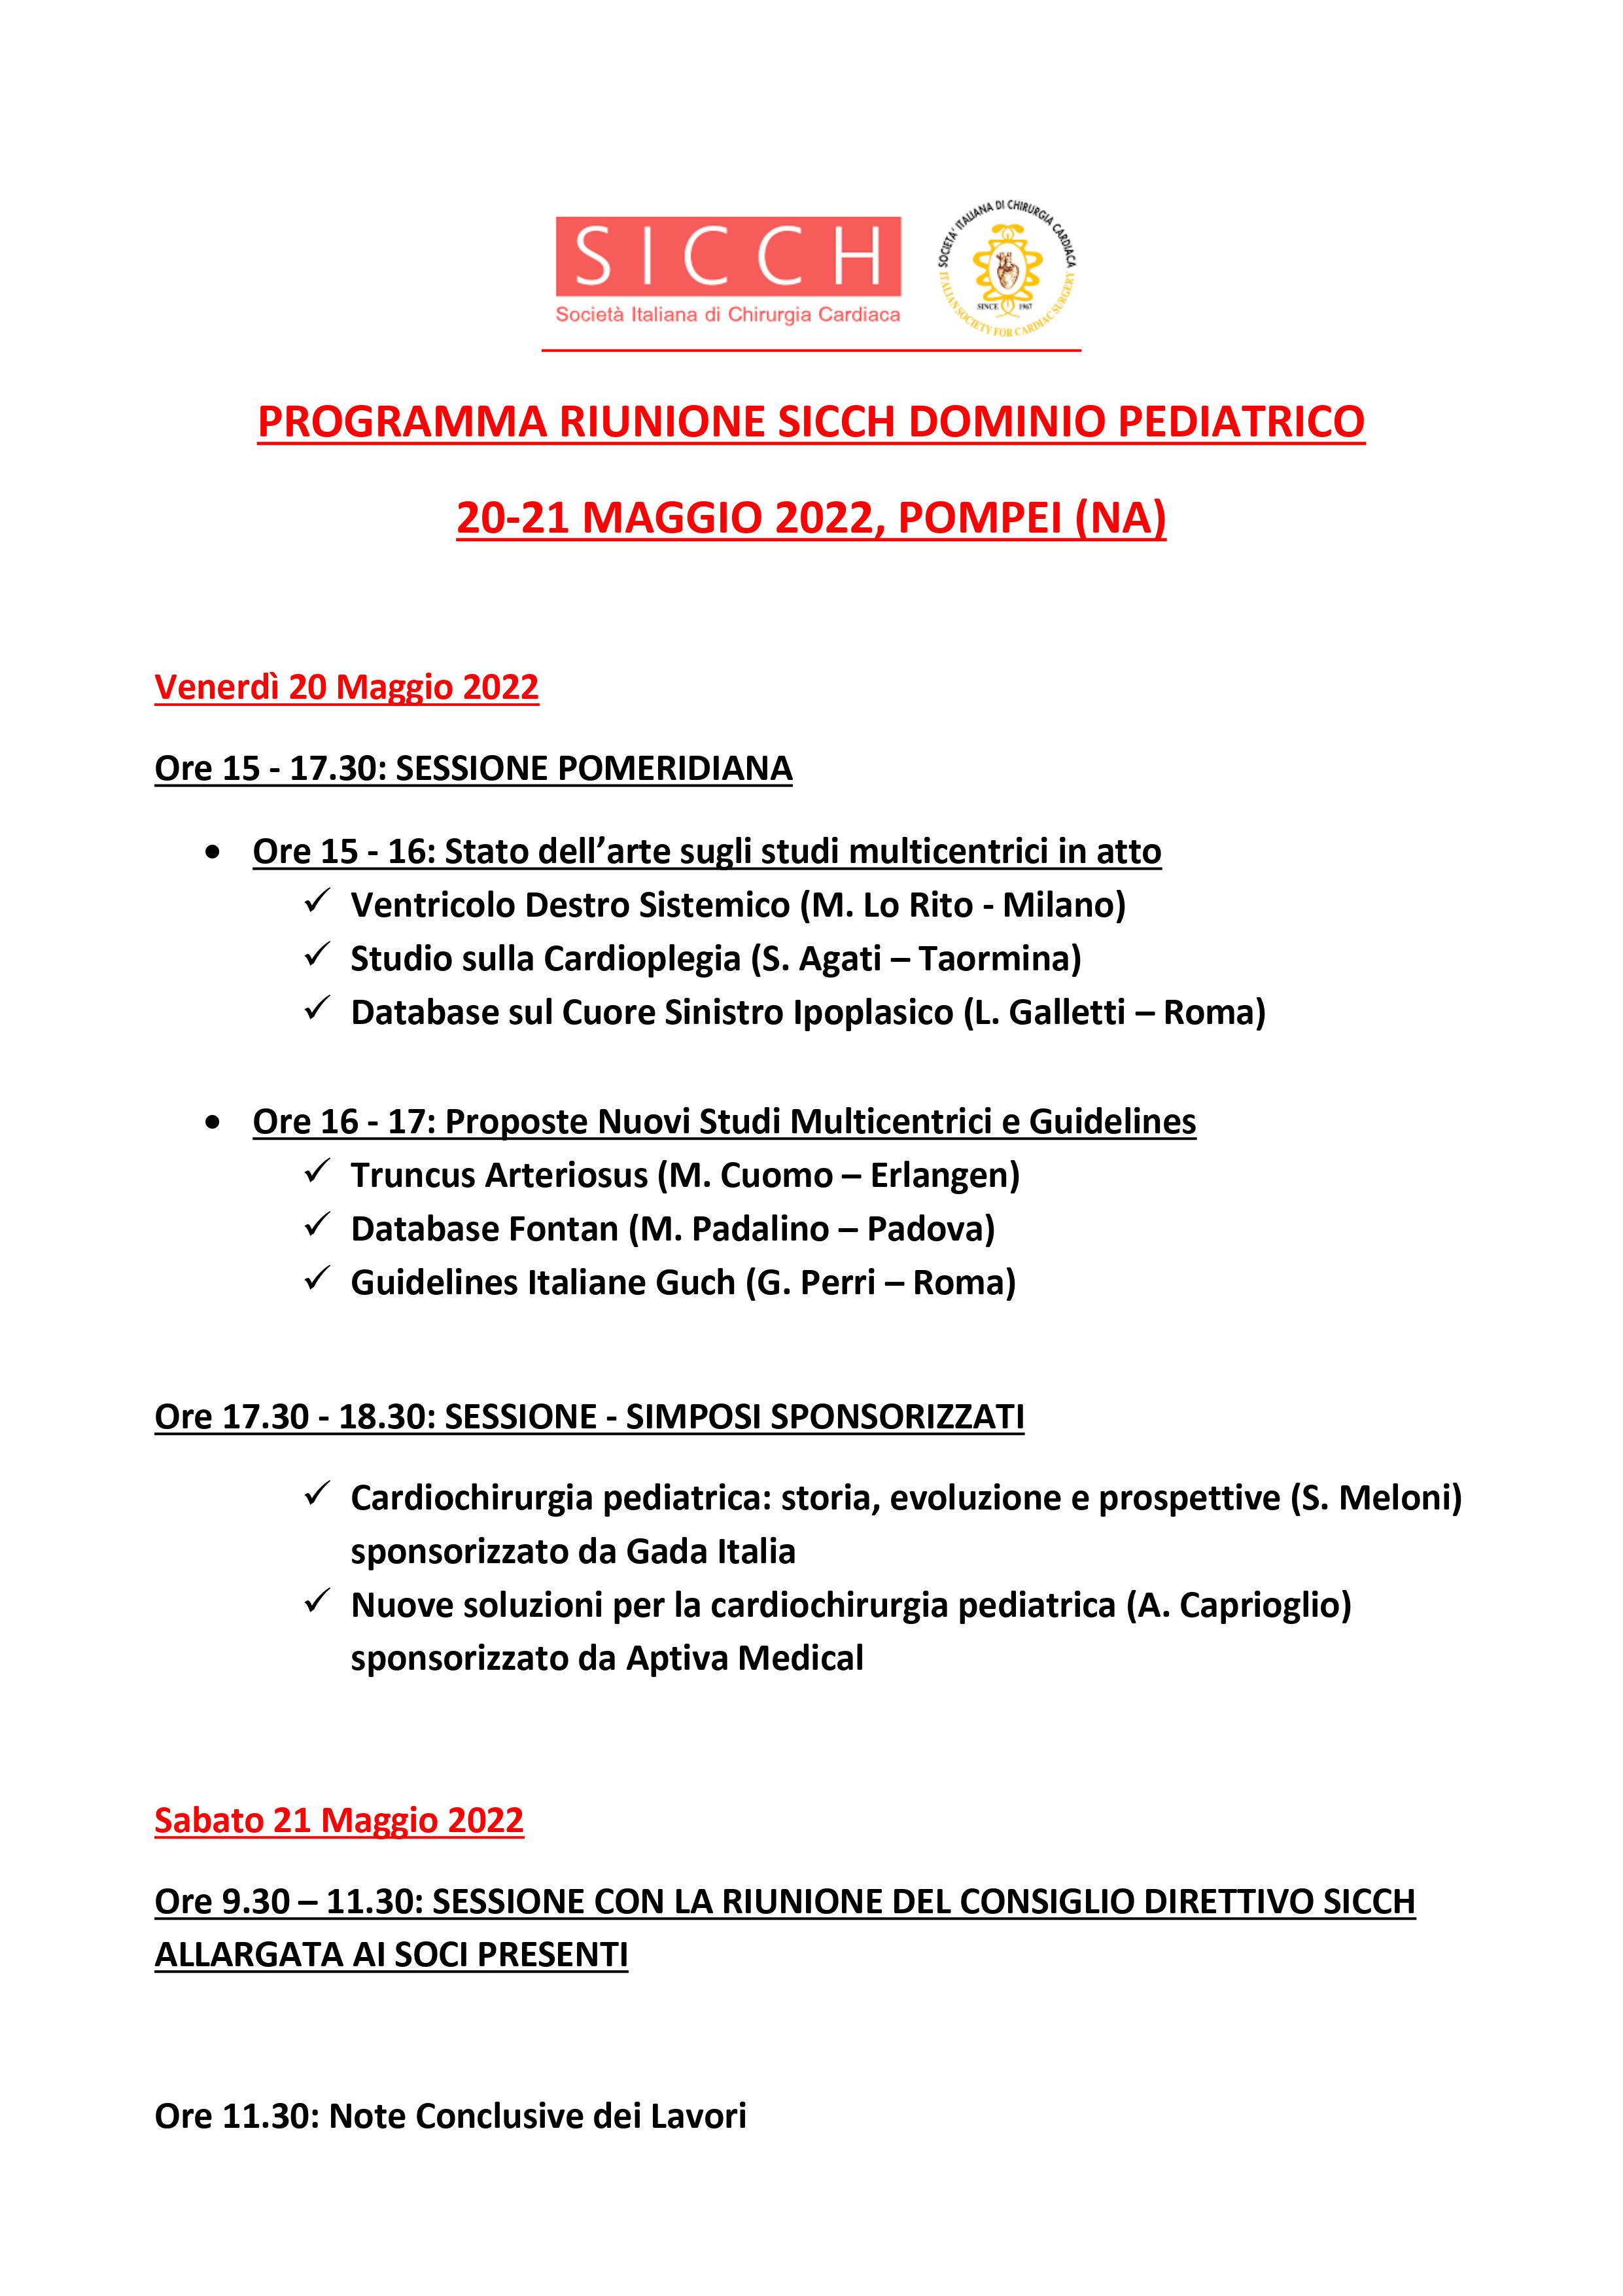 Programma SICCH PED Pompei 2022 rev7bis.jpg (526 KB)